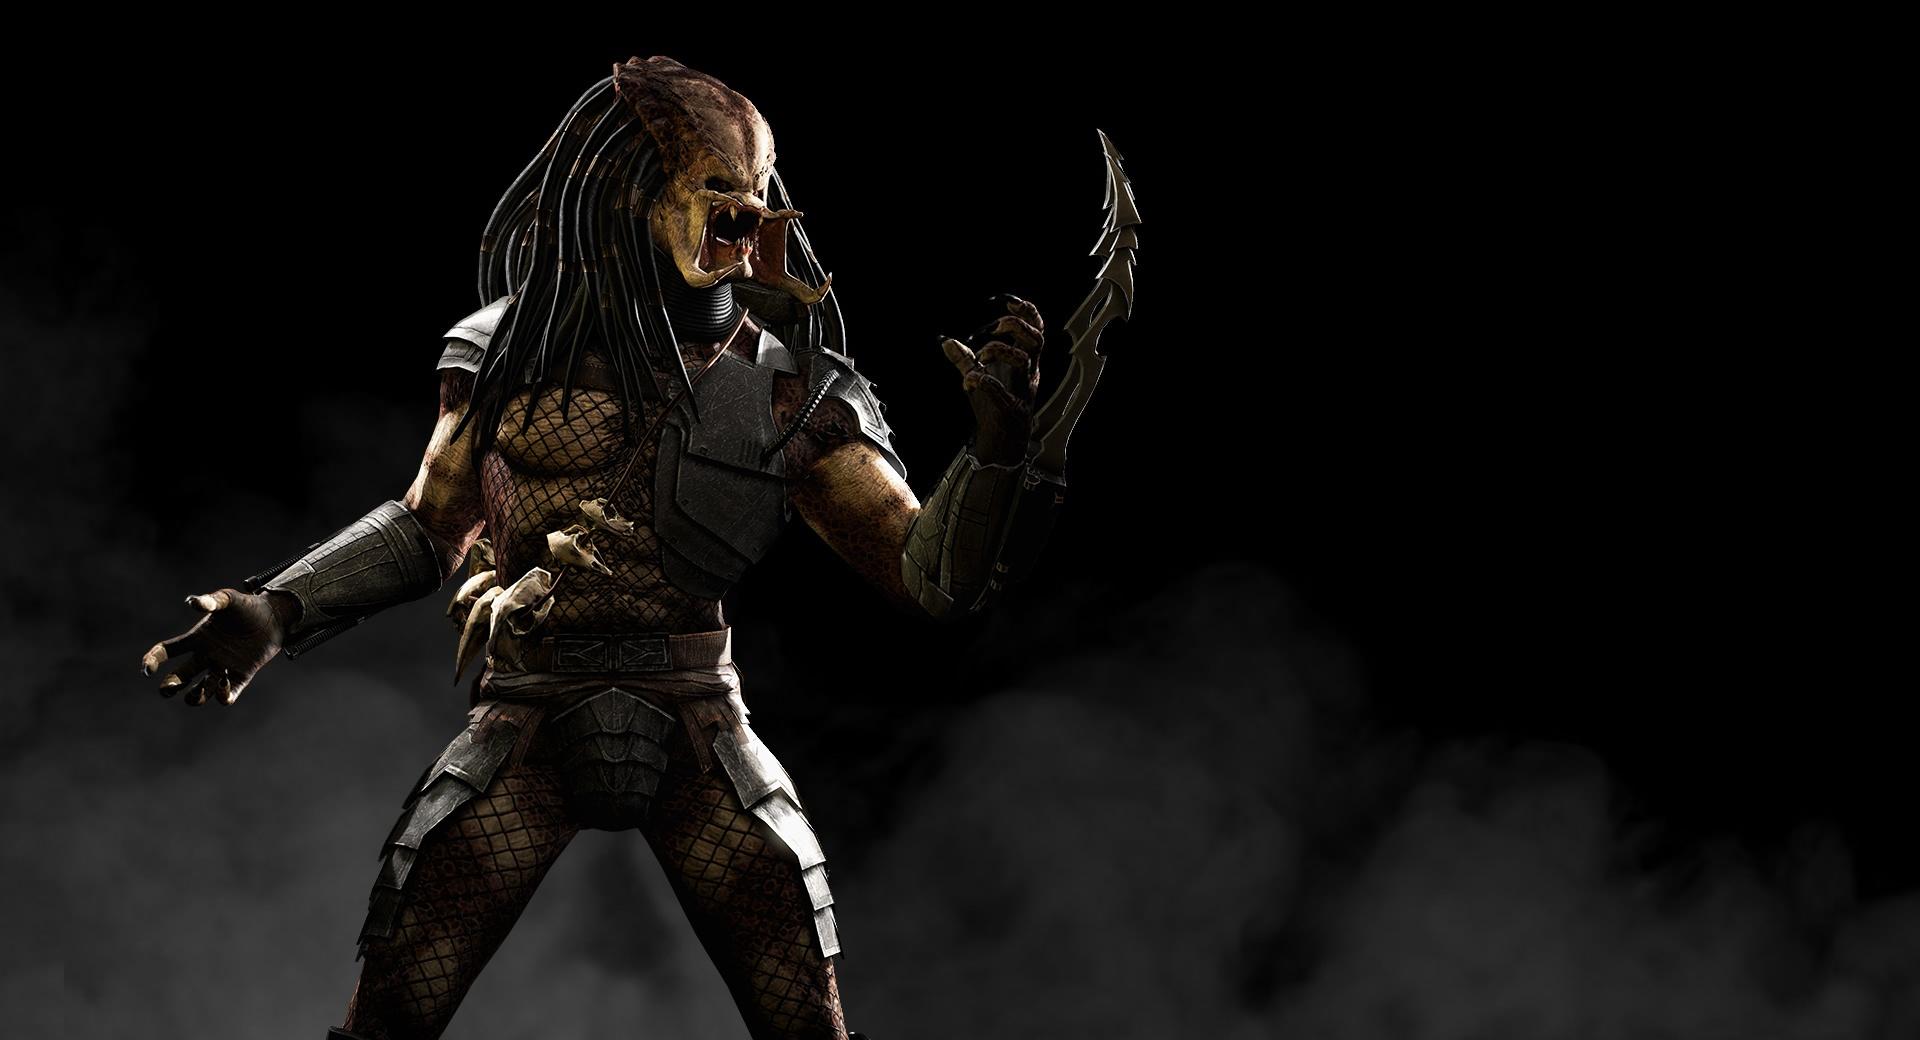 Mortal Kombat X Predator at 2048 x 2048 iPad size wallpapers HD quality